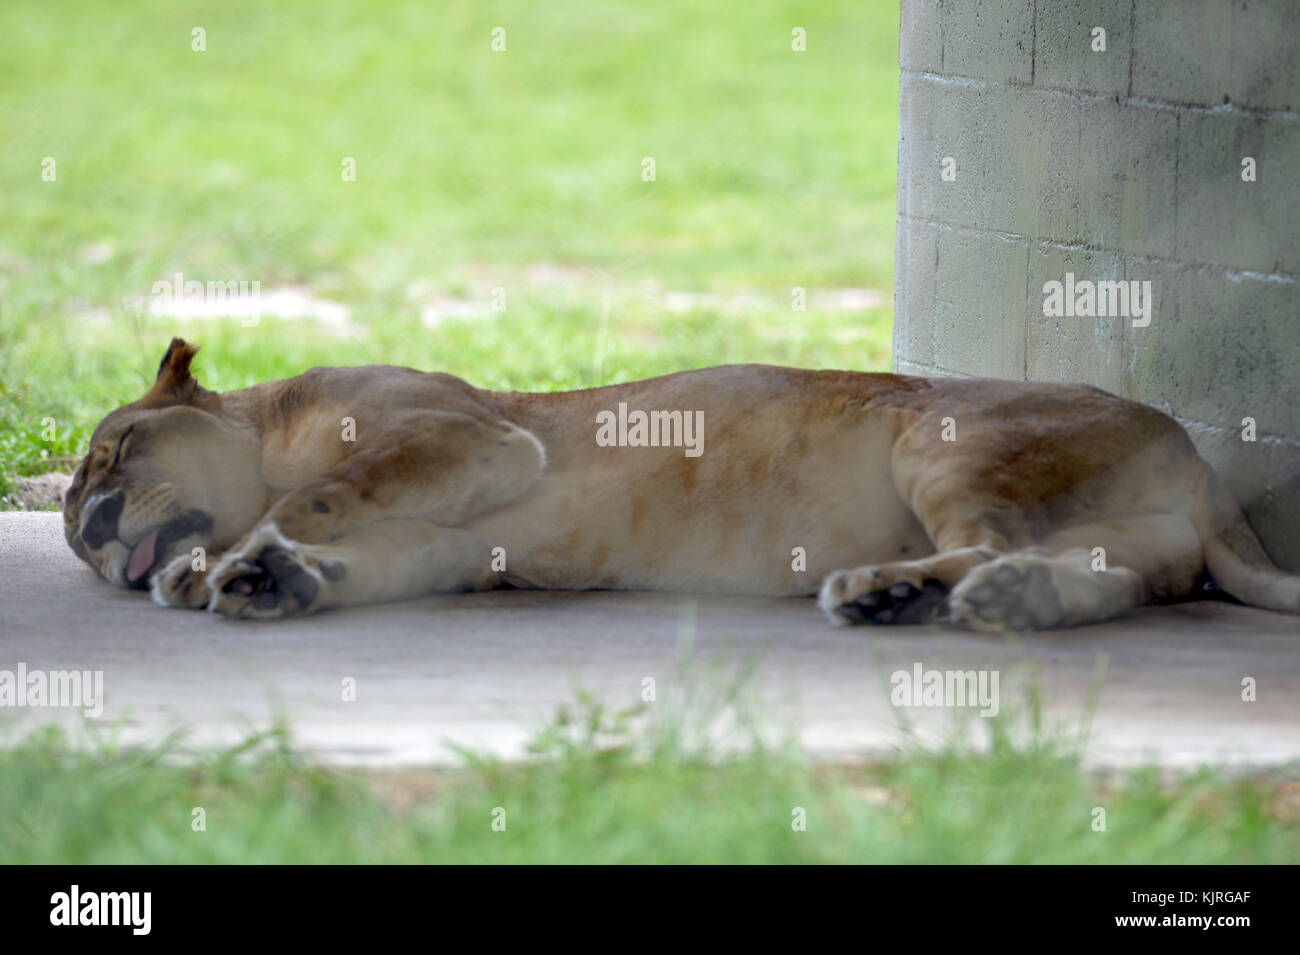 Wellington, fl - le 17 août : lion à Lion Country Safari le 17 août 2015 à Wellington, en Floride. Personnes : lion Banque D'Images